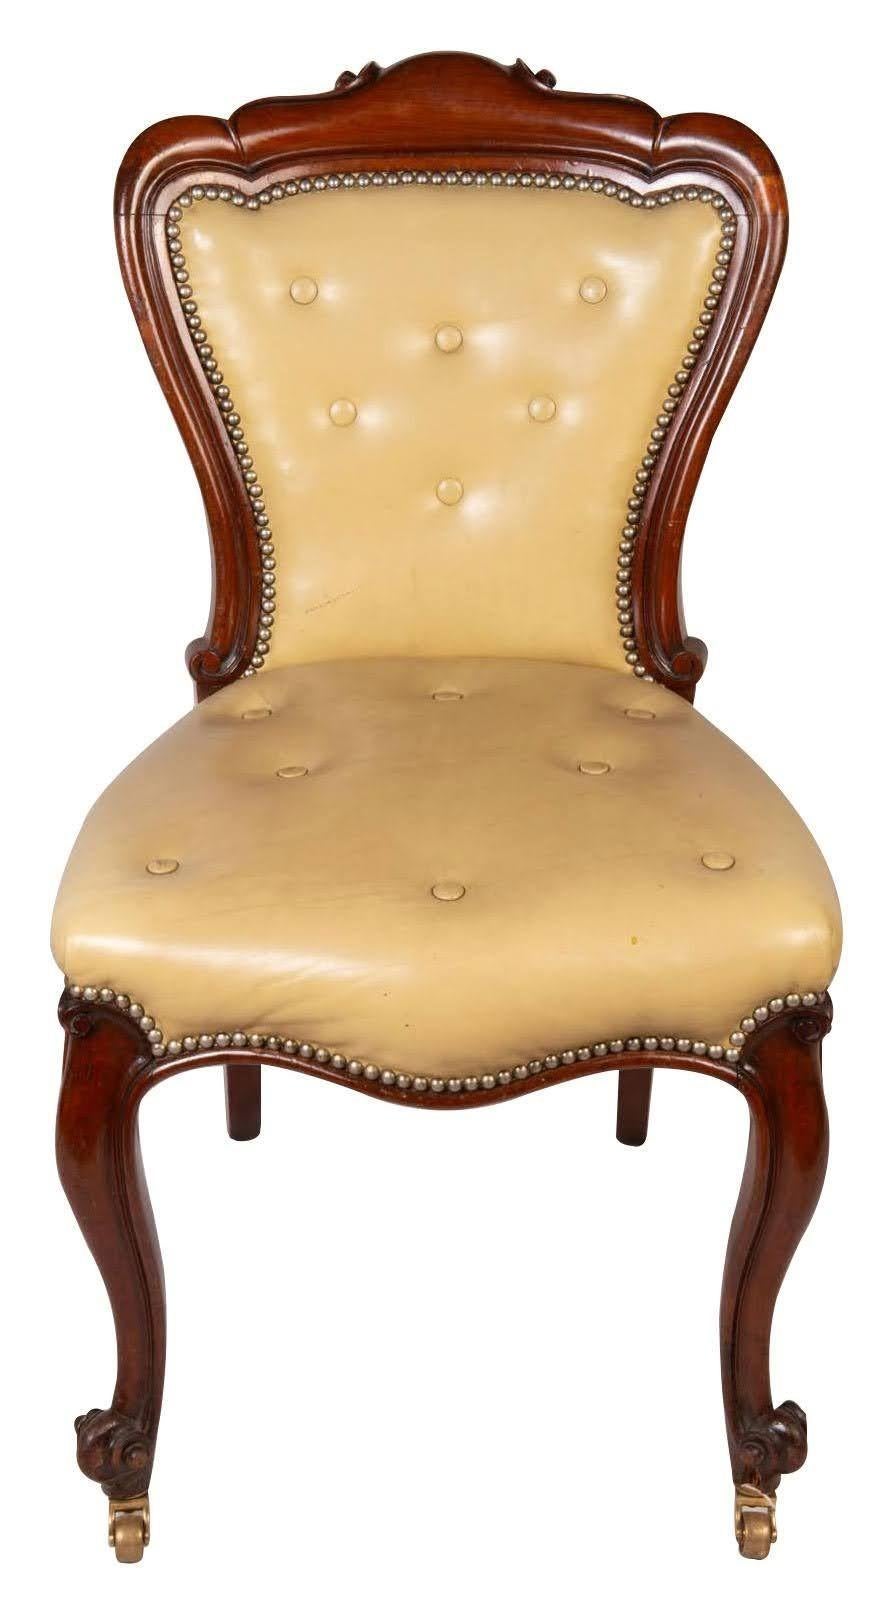 Eine gute Qualität Satz von sechzehn viktorianischen Mahagoni Esszimmer / Sitzungszimmer Stühle jeweils mit Show Holzrahmen, Leder Knopf gepolstert Rücken und Sitze, auf eleganten Cabriole Beine erhöht, endend in Messing Rollen, um 1860.
 
Charge